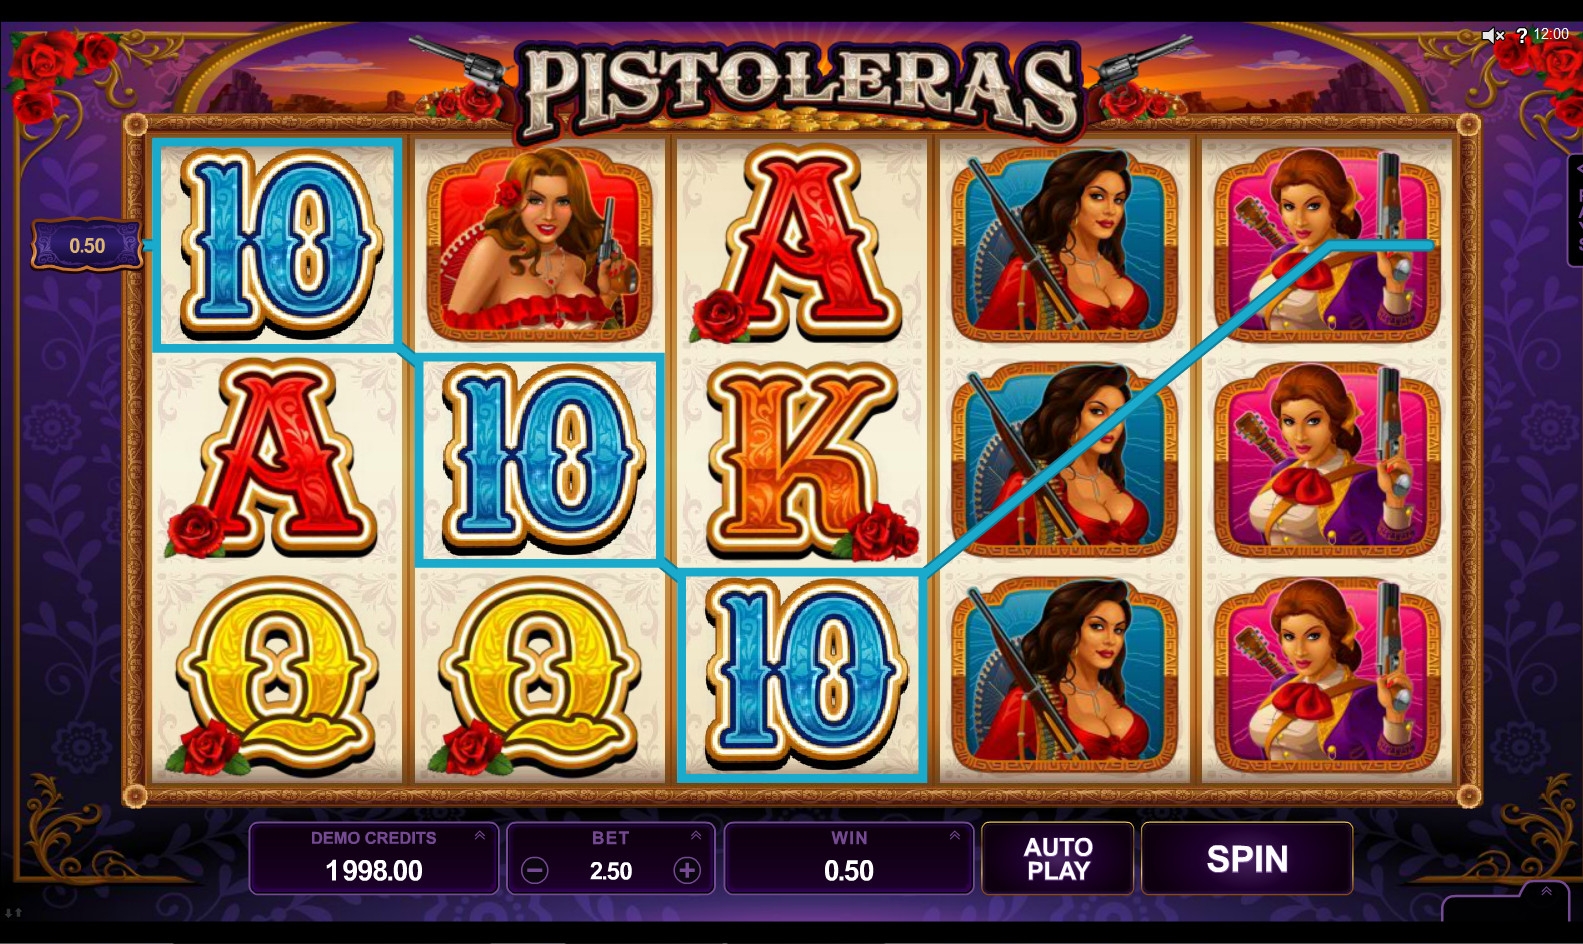 Pistoleras (Pistoleras) from category Slots